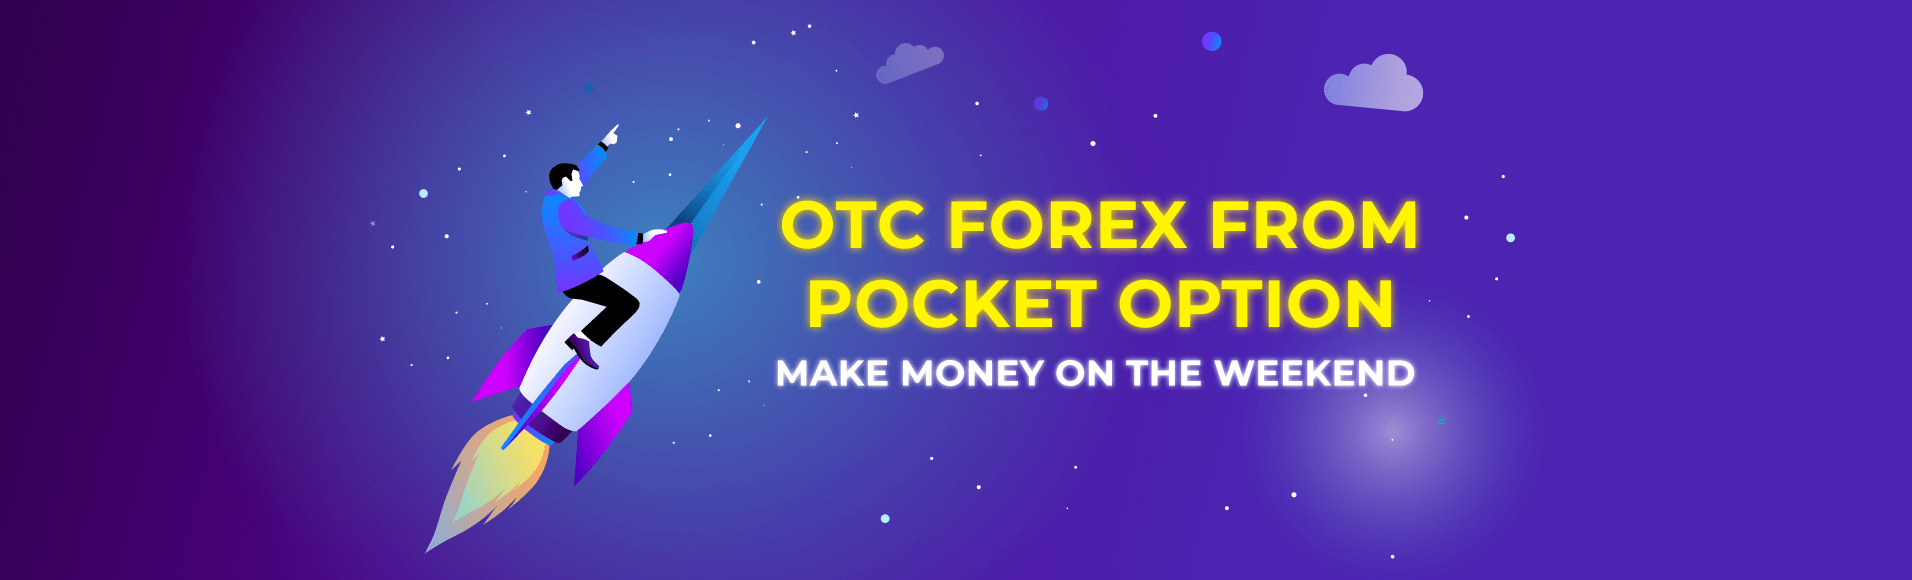 OTC Forex mula sa Pocket Option - kumita ng pera sa katapusan ng linggo